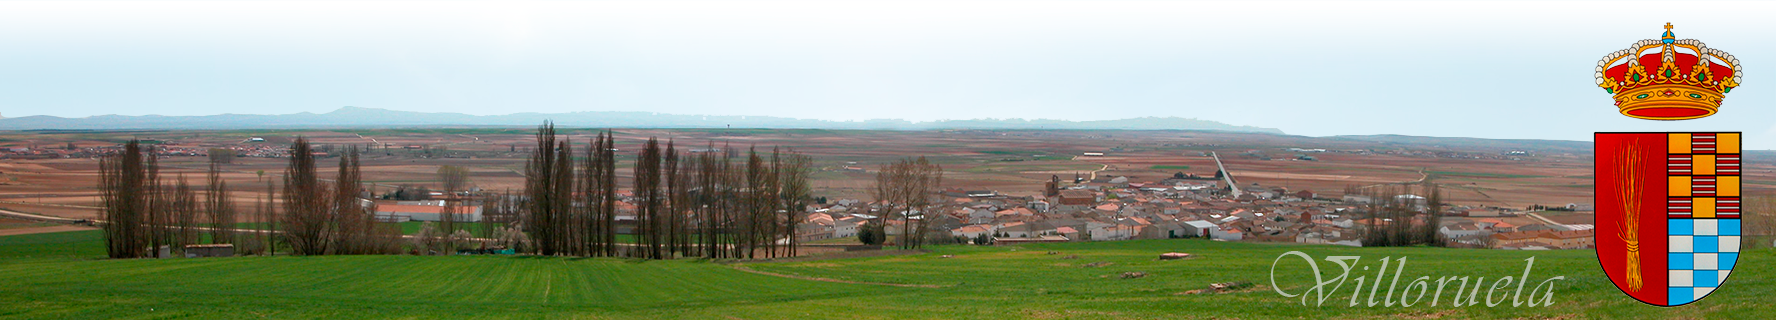 Ayuntamiento de Villoruela. Salamanca. Castilla y León. España.